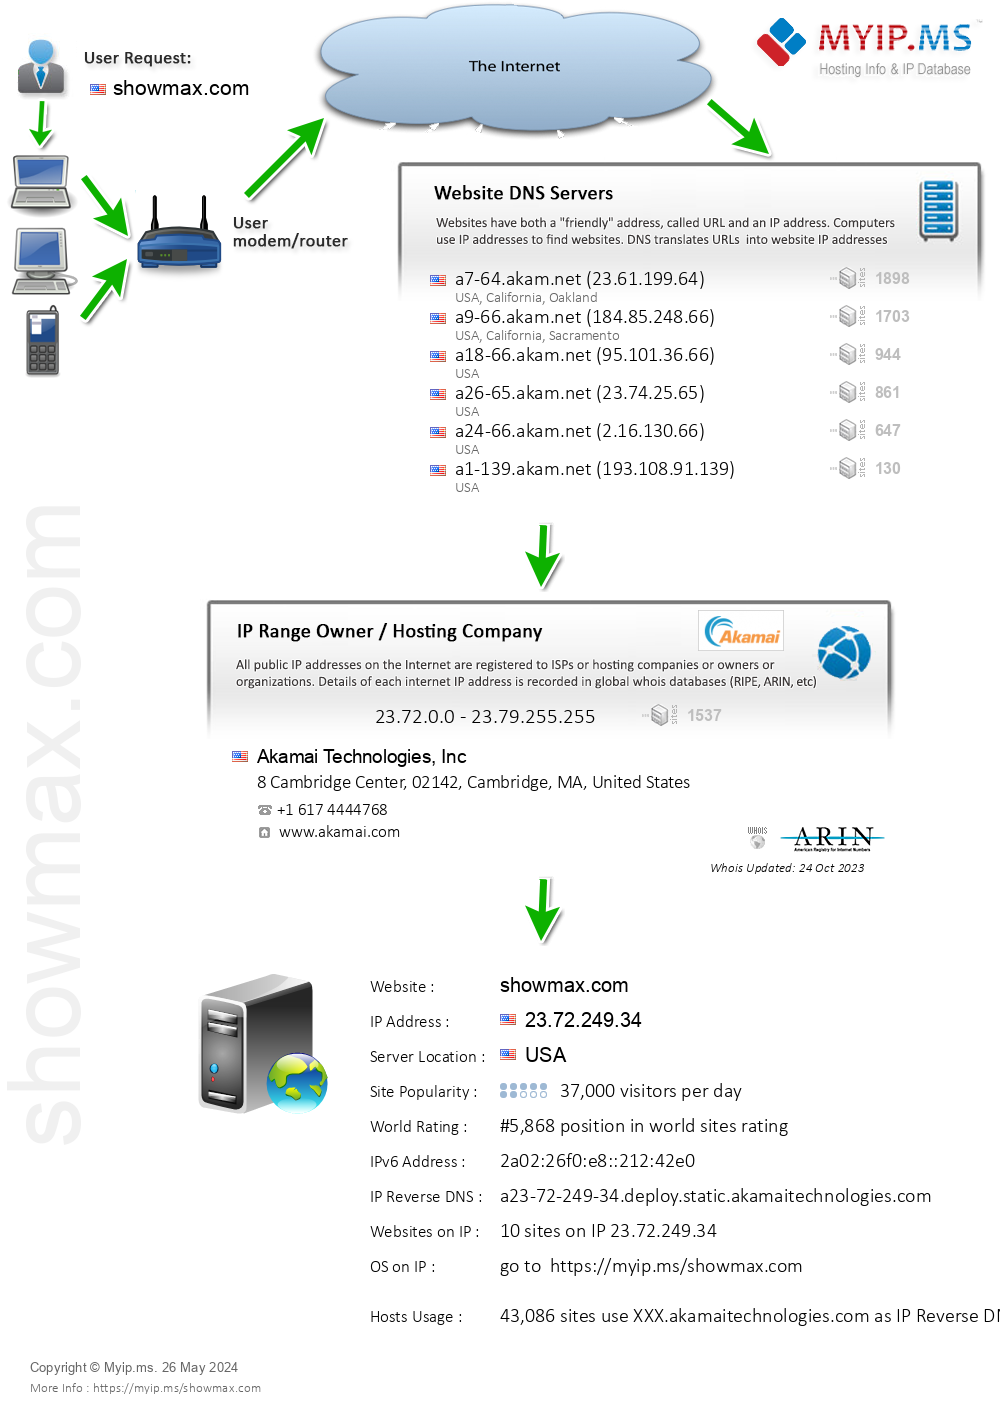 Showmax.com - Website Hosting Visual IP Diagram